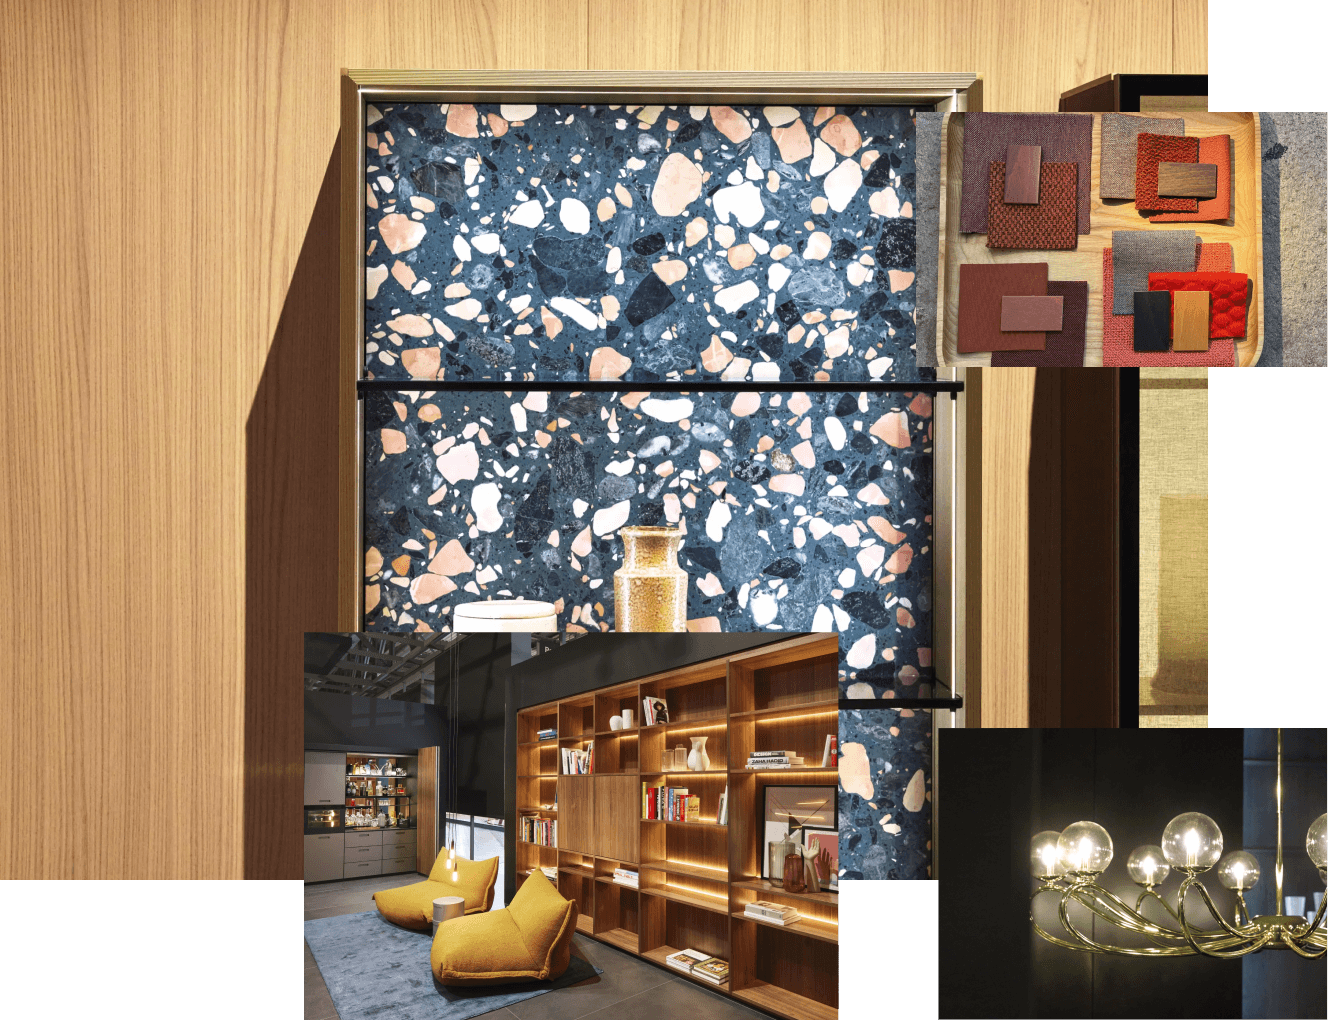 Salone del Mobile’den çeşitli izlenimler: Arkalığı renkli taşlarla bezenmiş bir vitrin, değişik renklerde farklı kumaşlardan malzeme örnekleri, ışıklandırılmış mobilyalar, modern bir yorumla tasarlanmış bir avize.